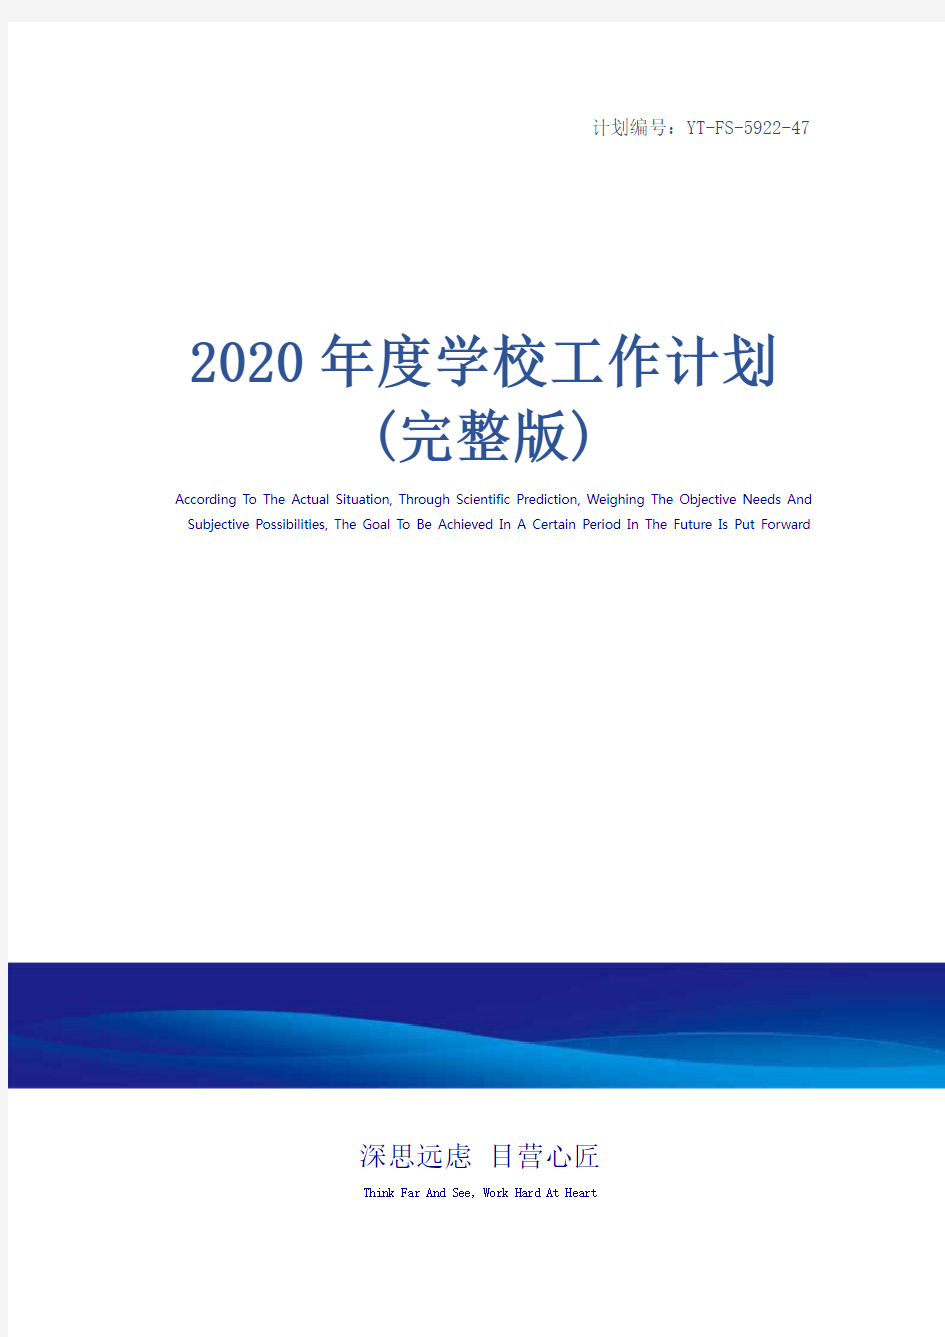 2020年度学校工作计划(完整版)